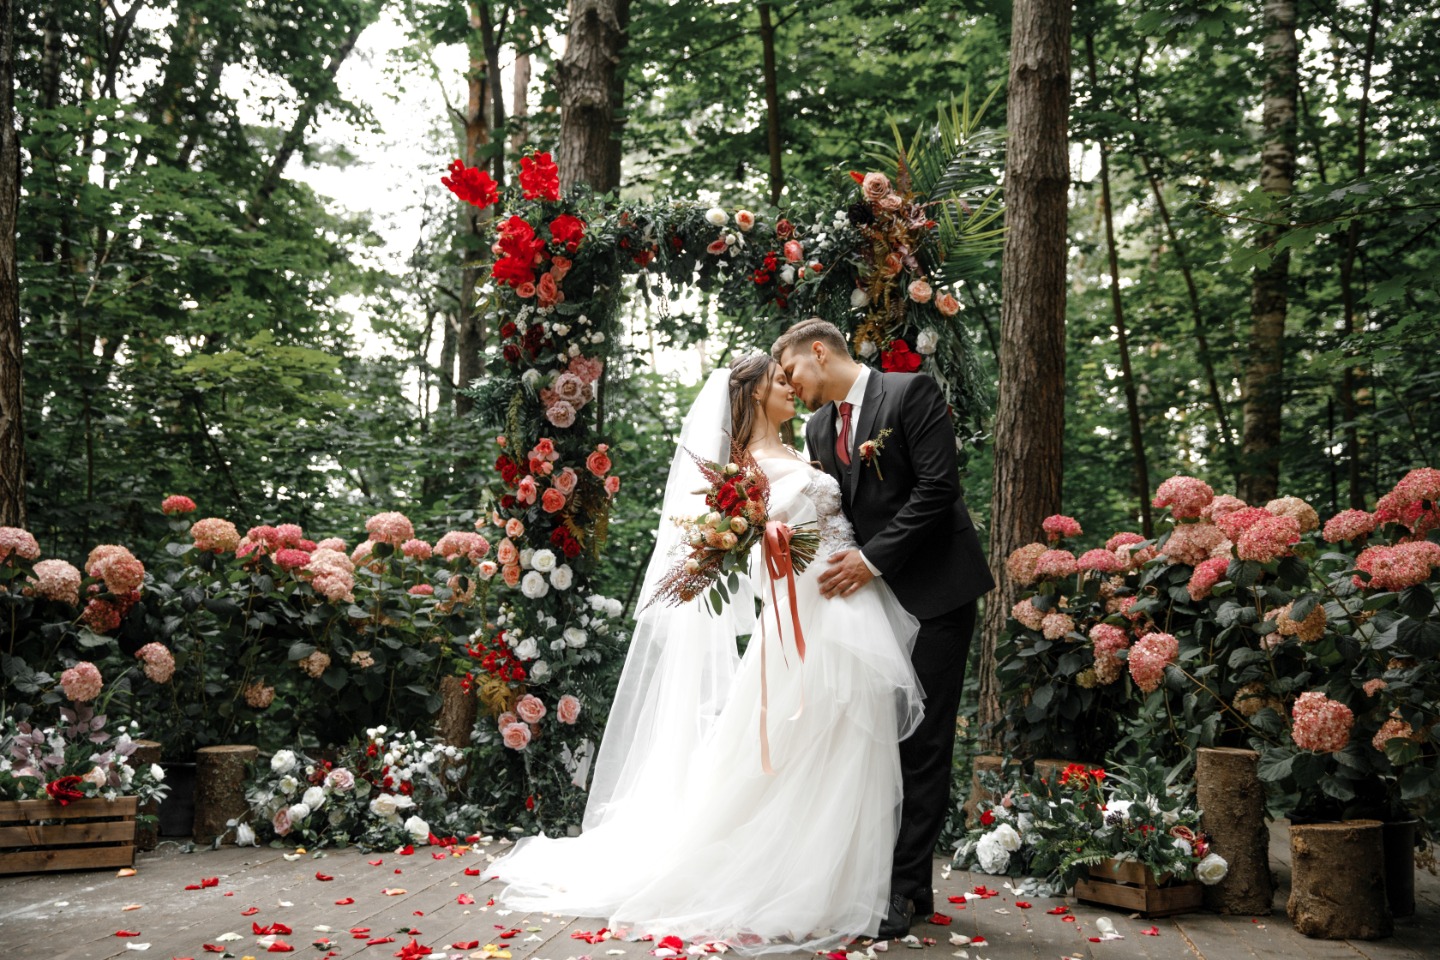 Организация свадьбы в чехии: советы и лучшие места для церемонии